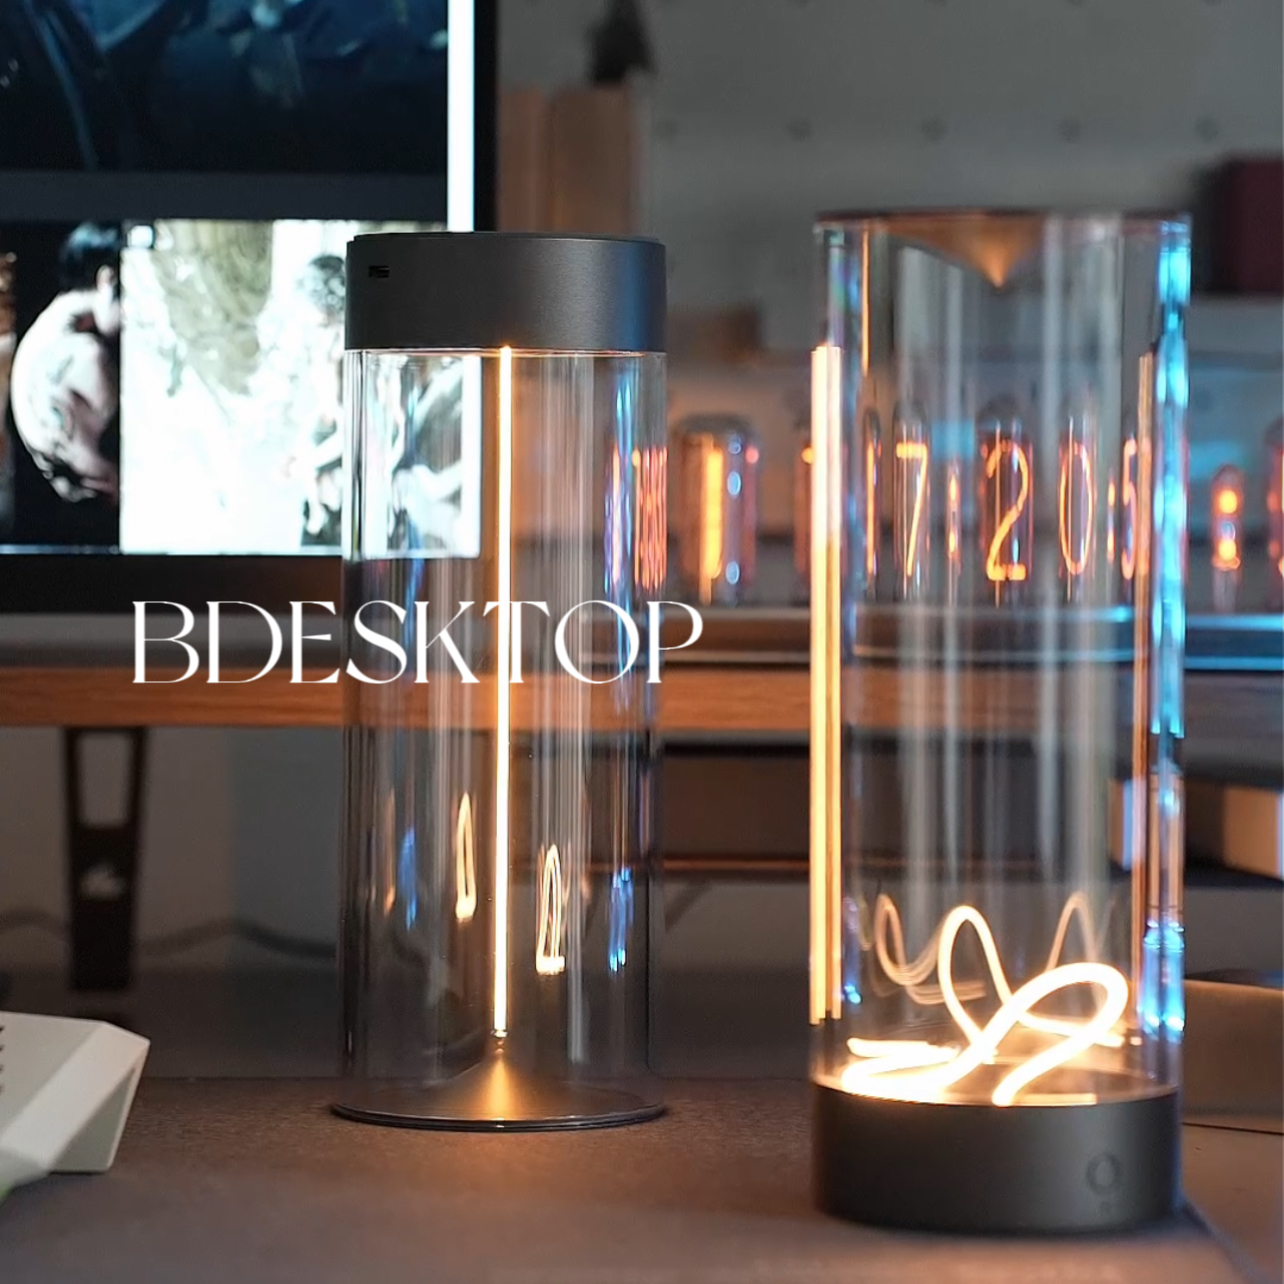 Bdesktop Design Shop | Augelight atmosphere lamp Bedroom mood table set good things atmosphere lamp Bedside lamp Nightlight